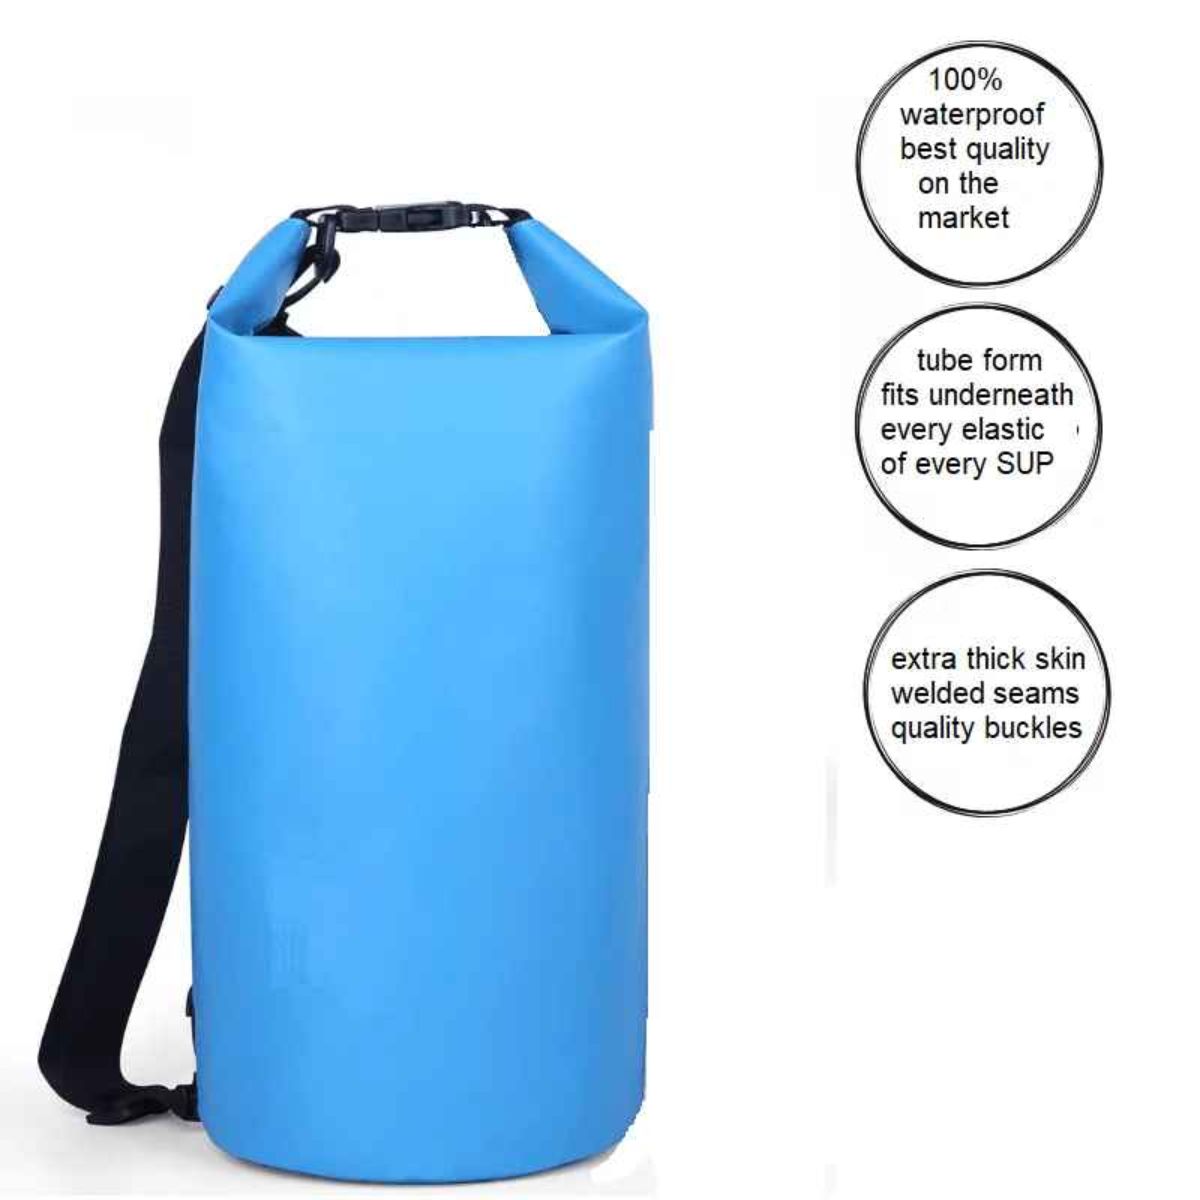  FIT OCEAN Premium Quality 5 liter Waterproof Bag